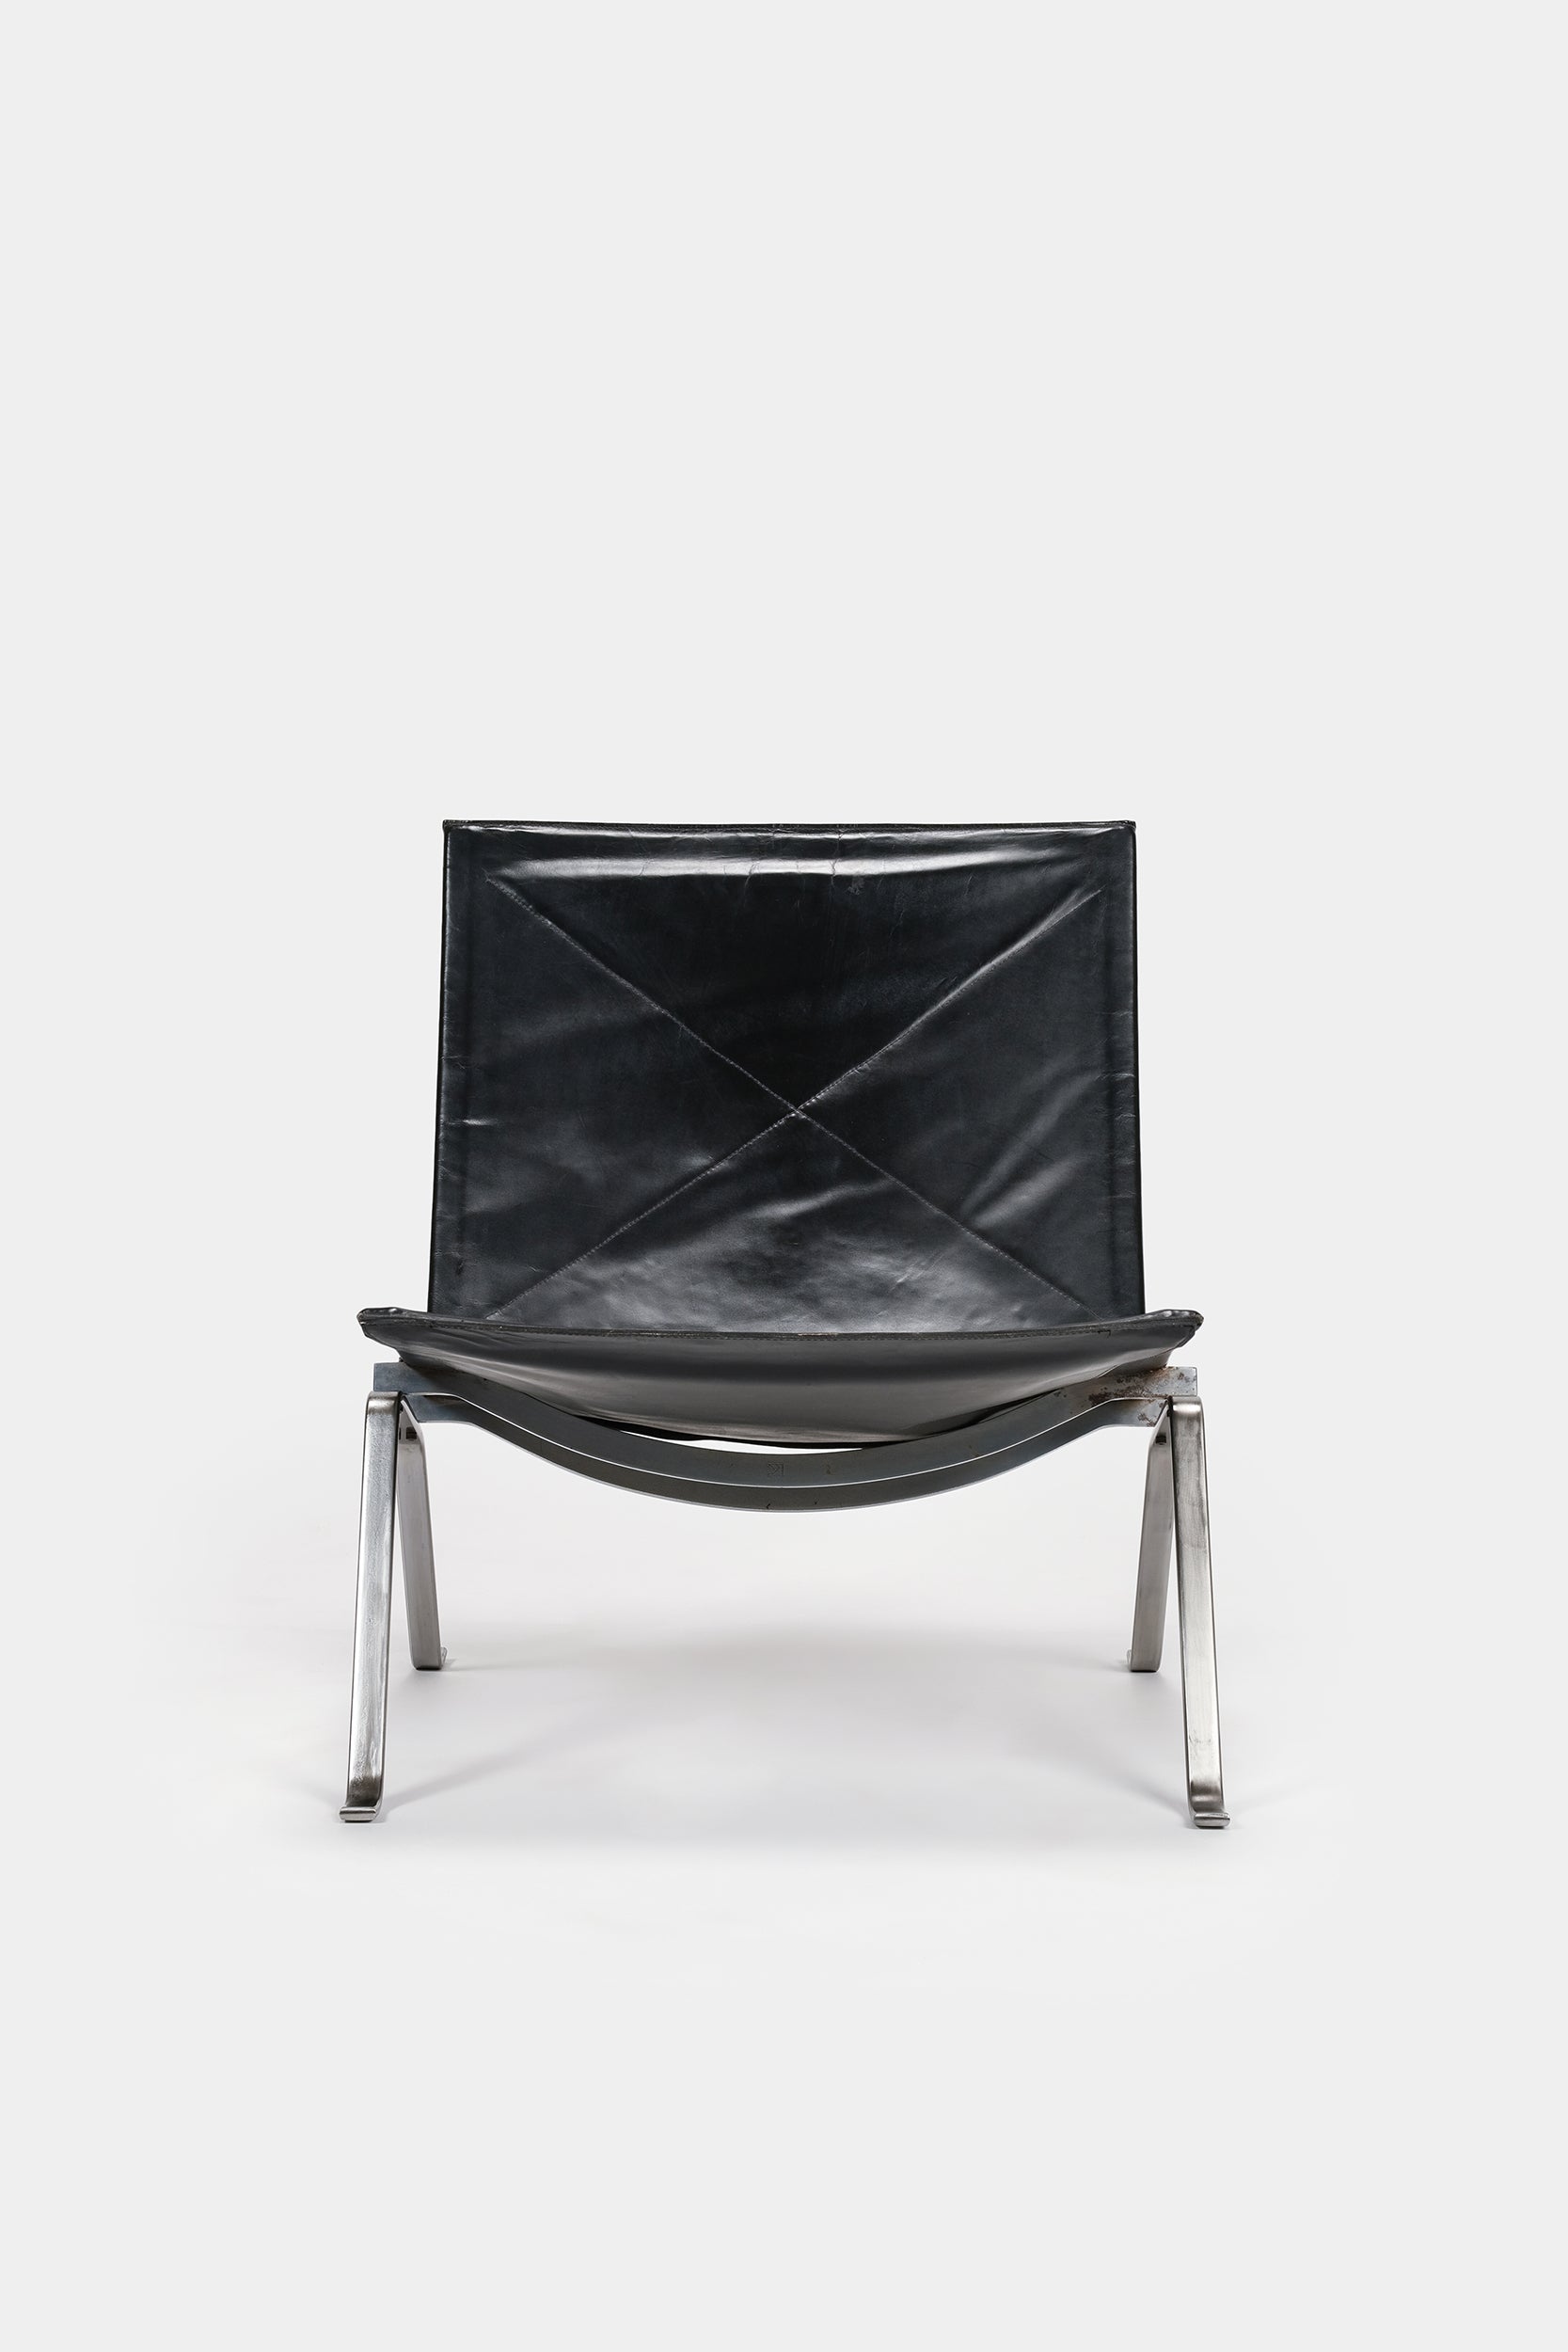 Poul Kjaerholm, Lounge Chair PK22, 1956